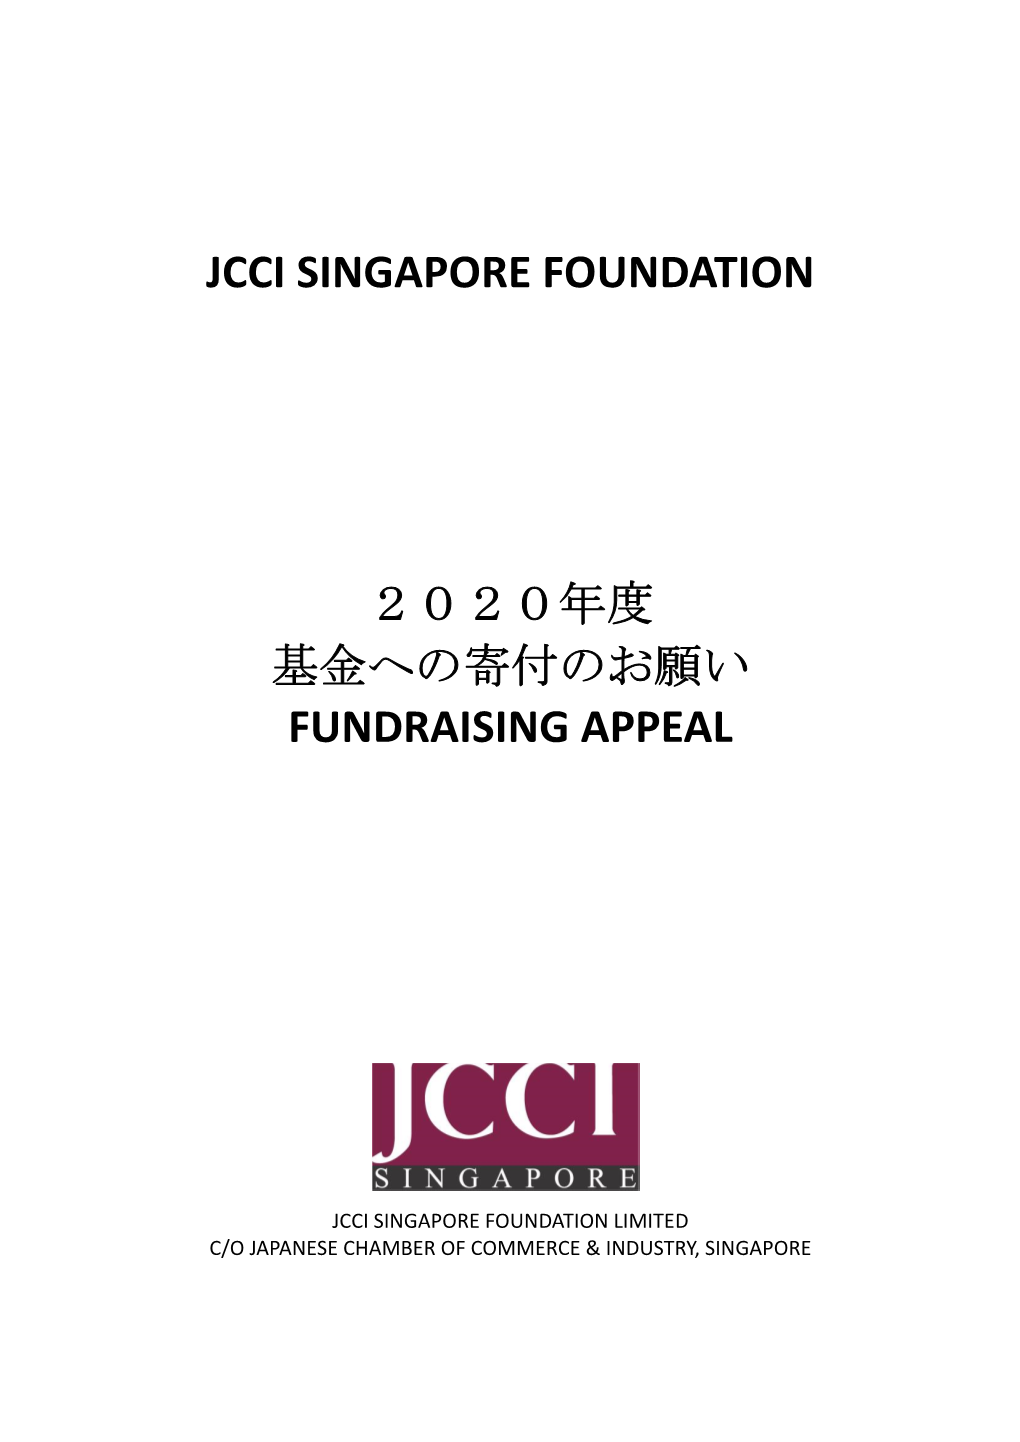 Jcci Singapore Foundation 2020年度 基金への寄付のお願い